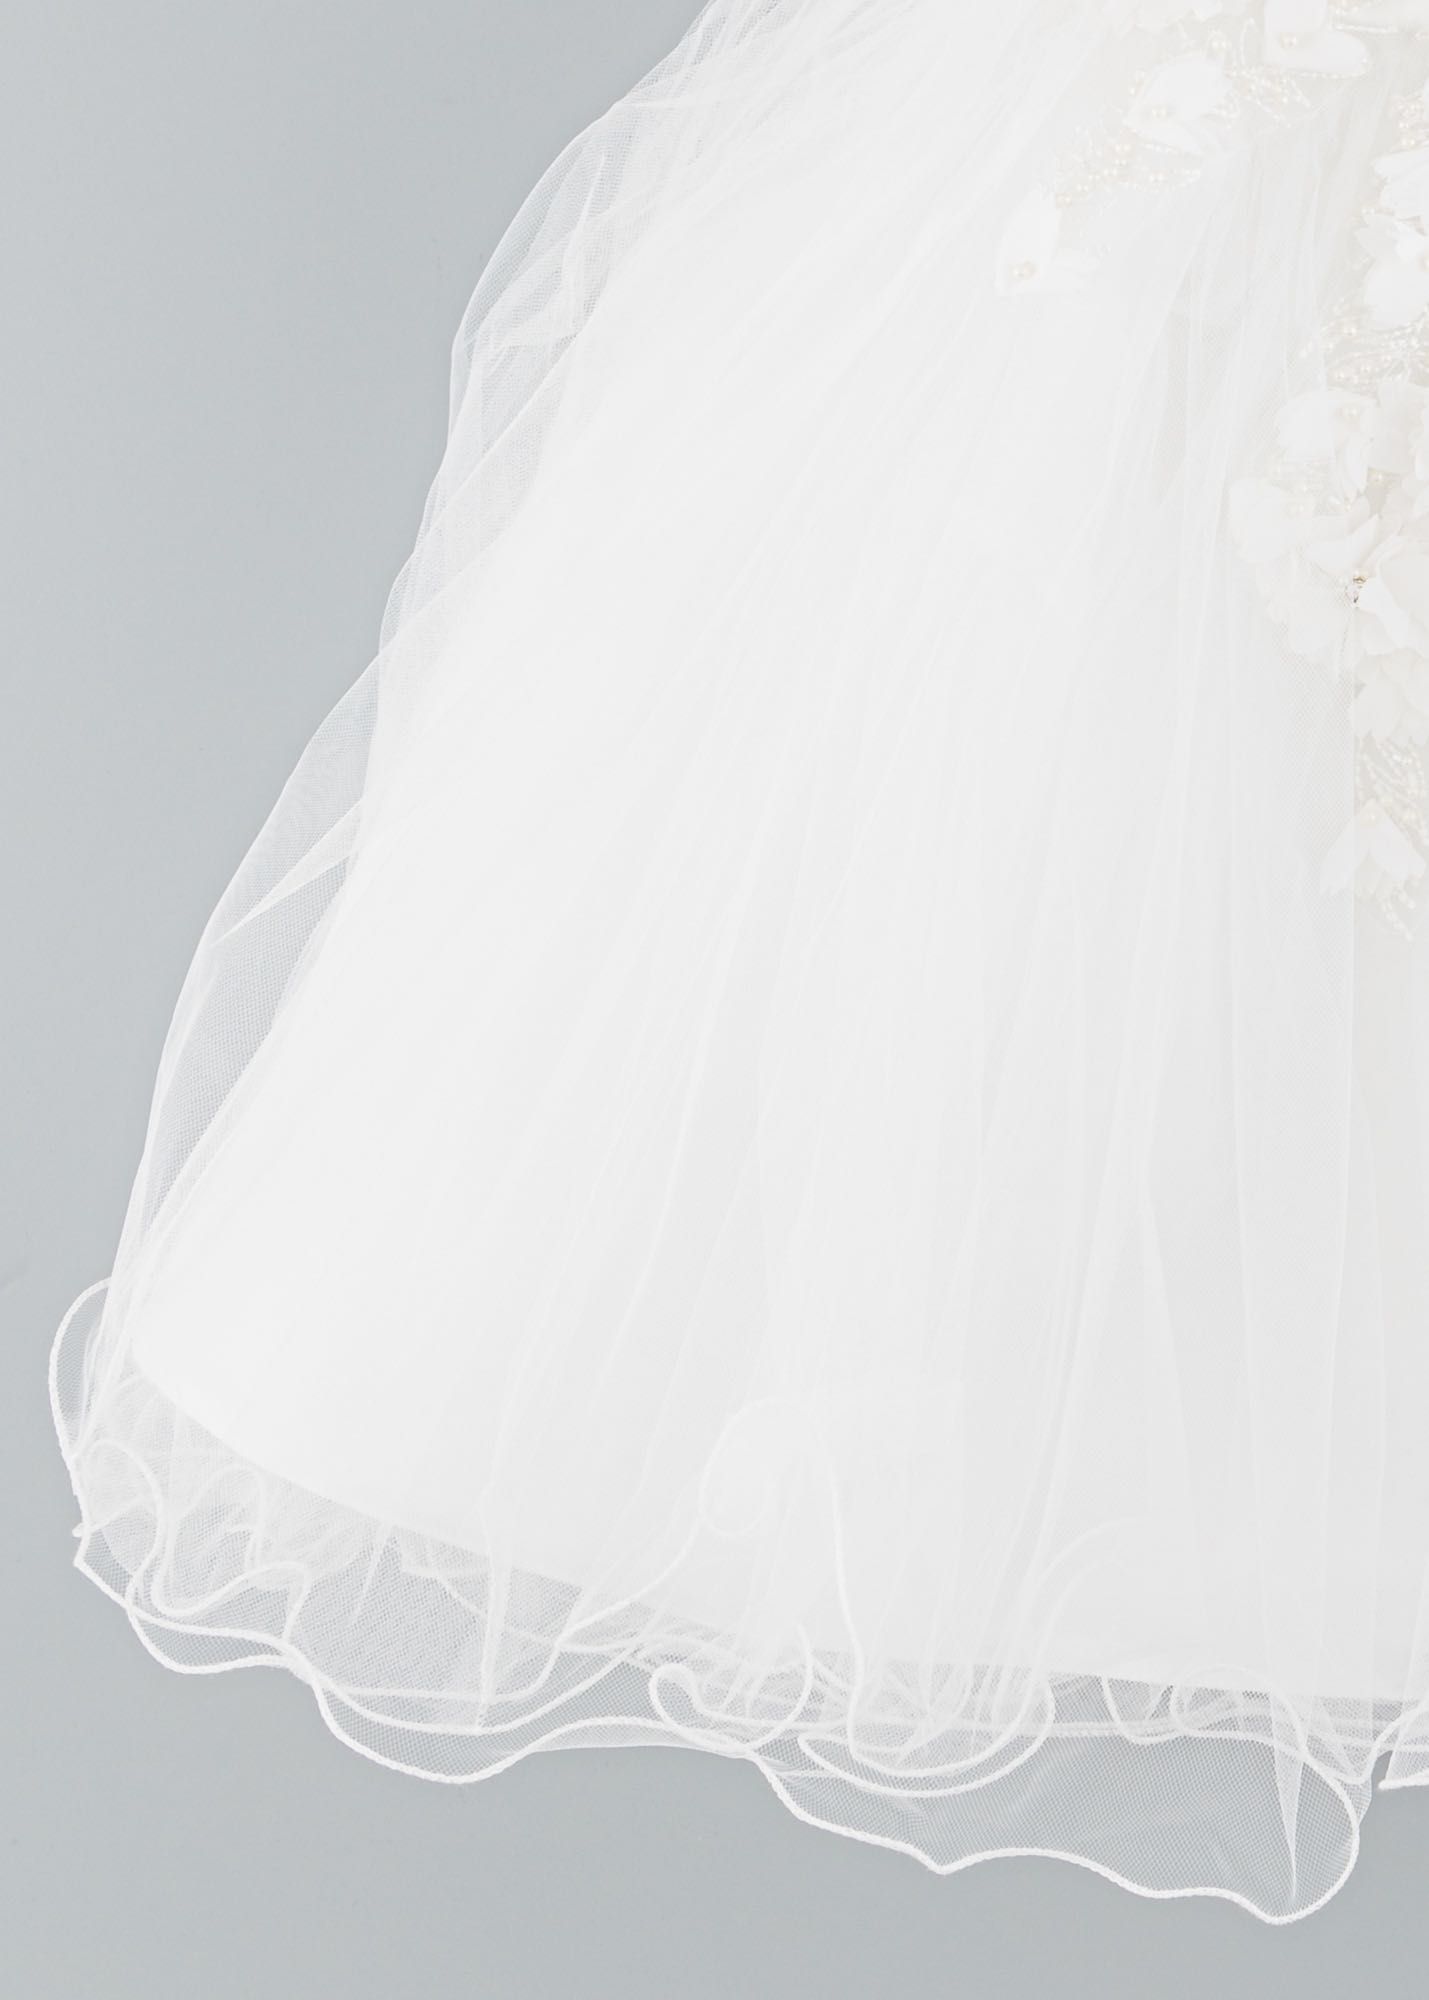 Нова официална бяла рокля размер 90 - 1-2 години